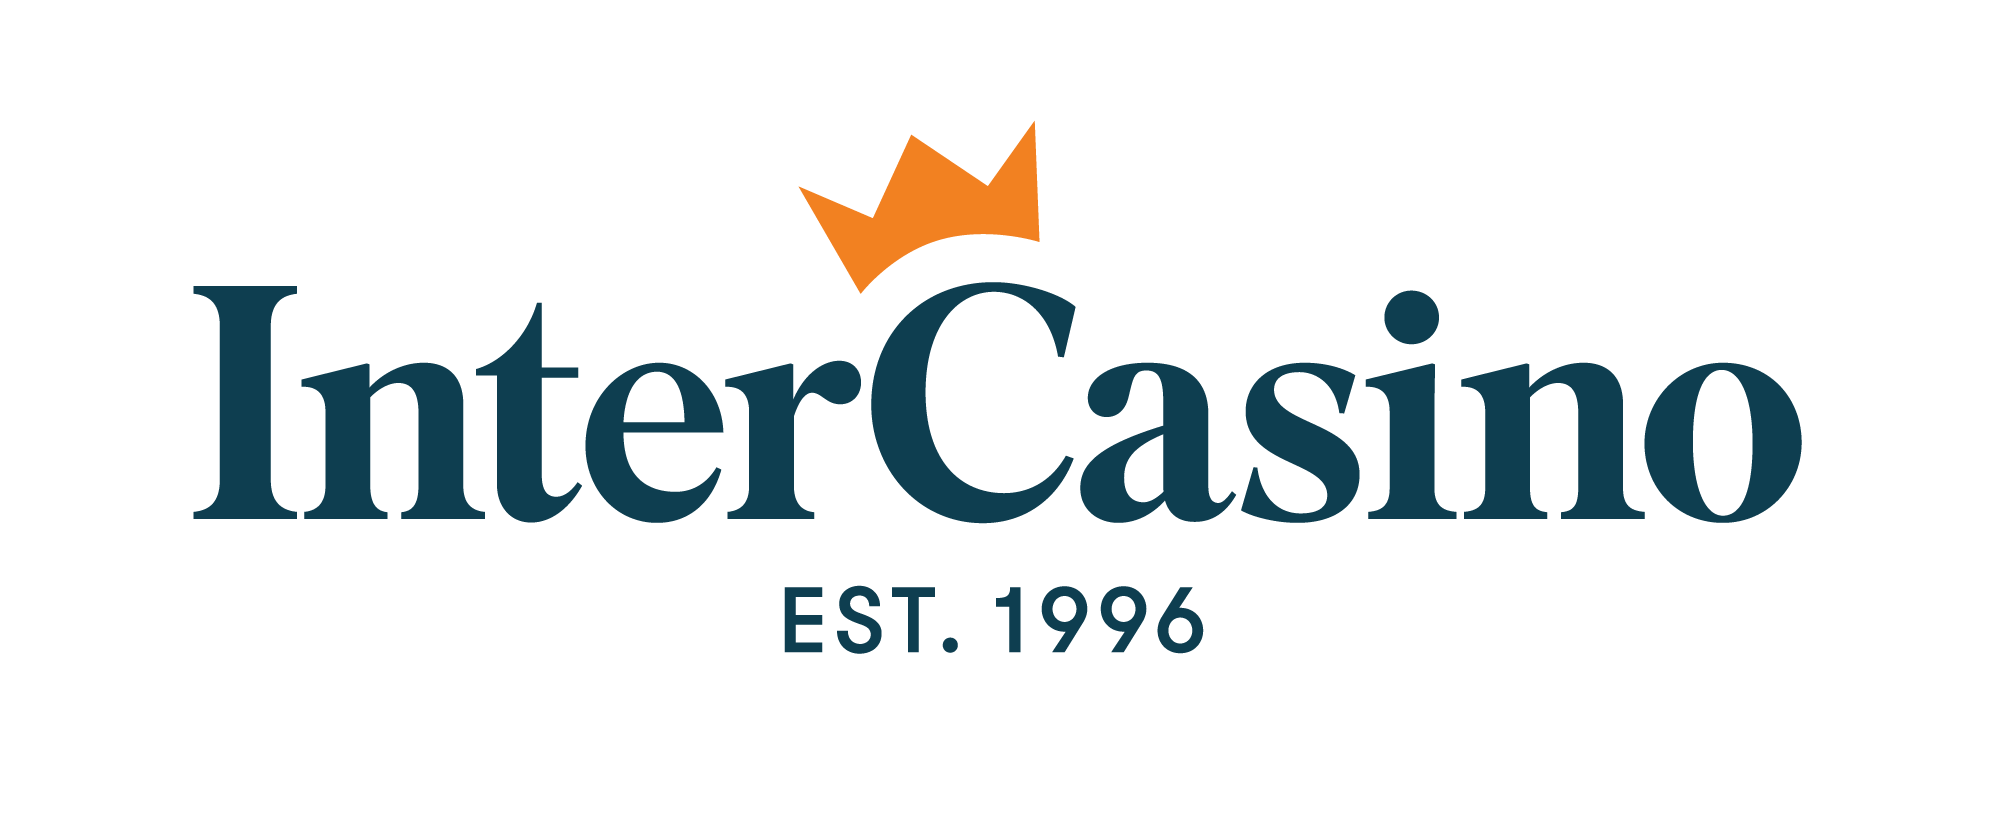 Online casino Intercasino - logo